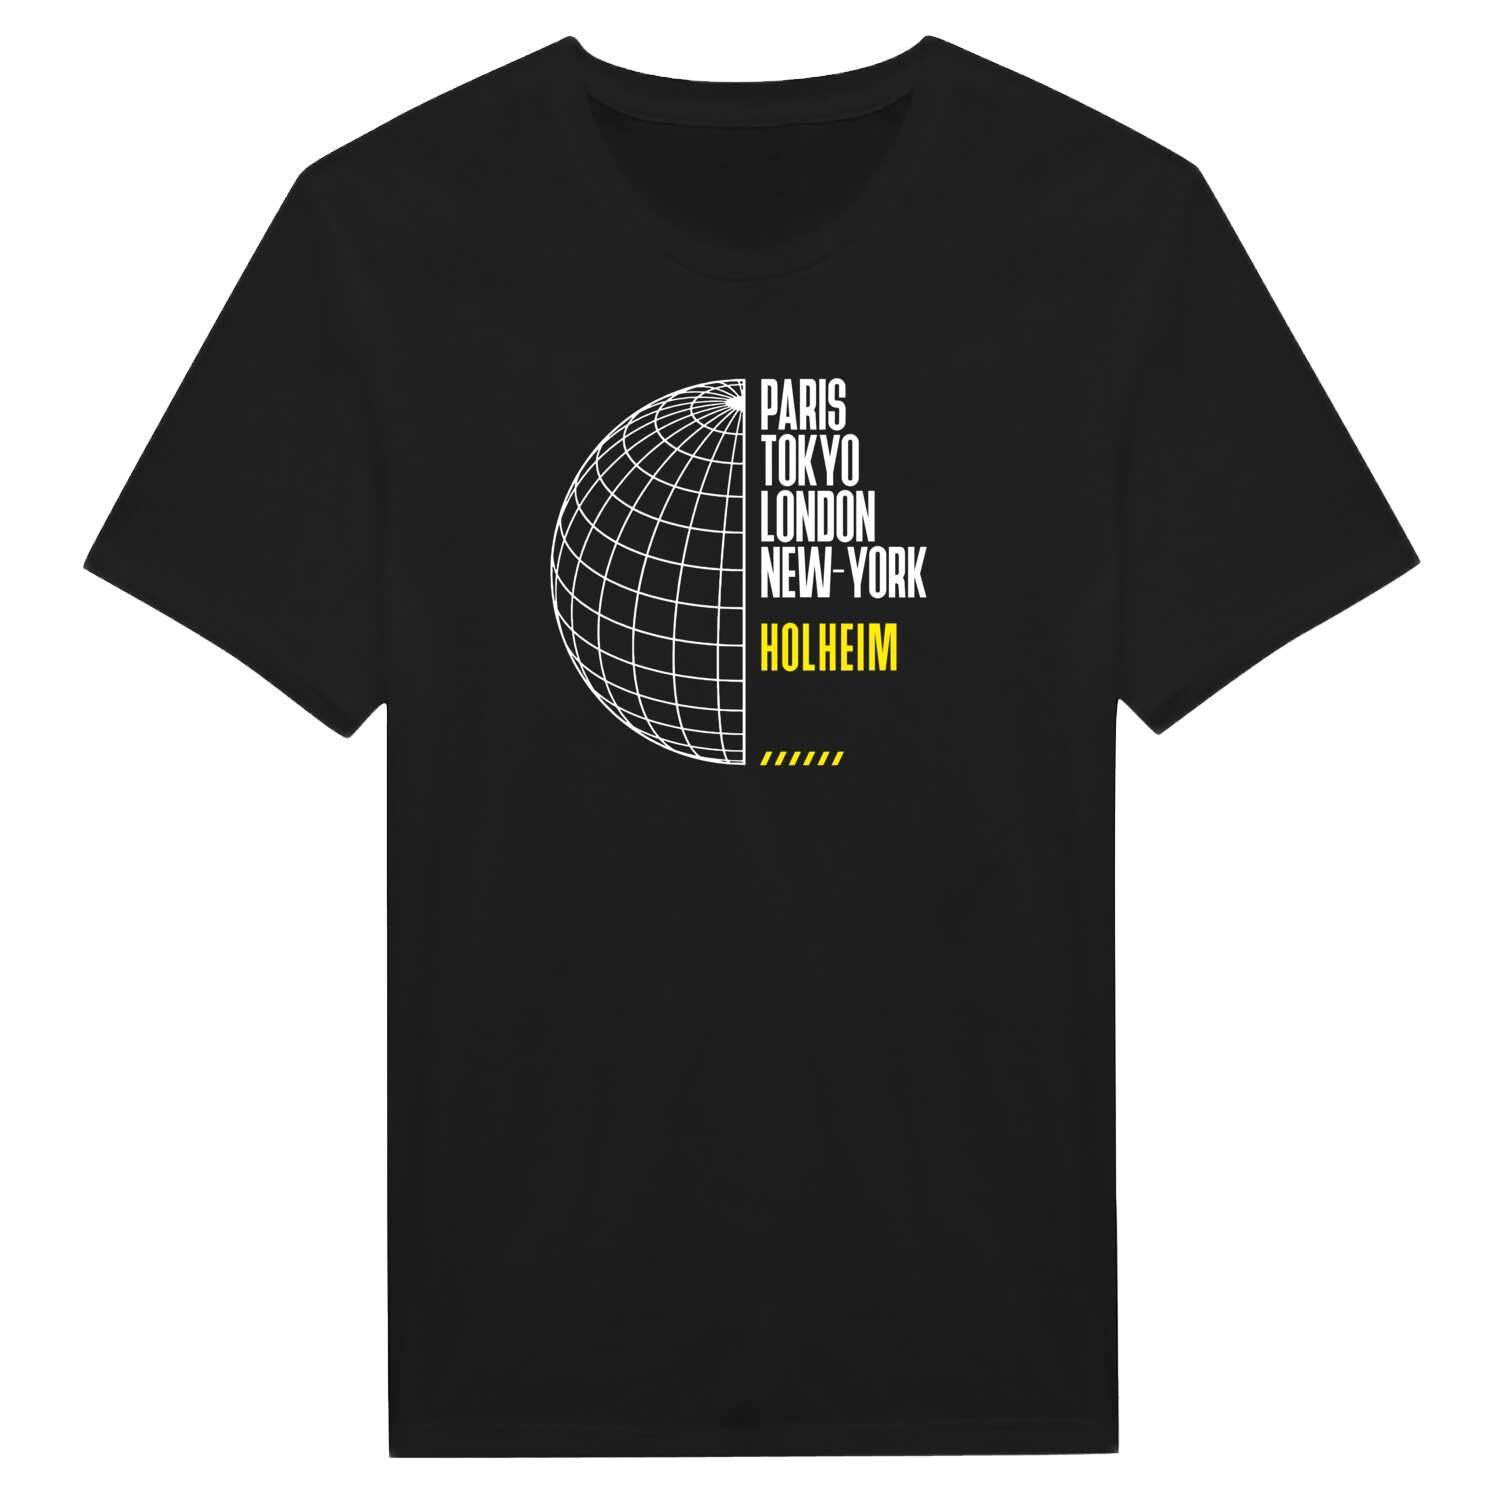 Holheim T-Shirt »Paris Tokyo London«